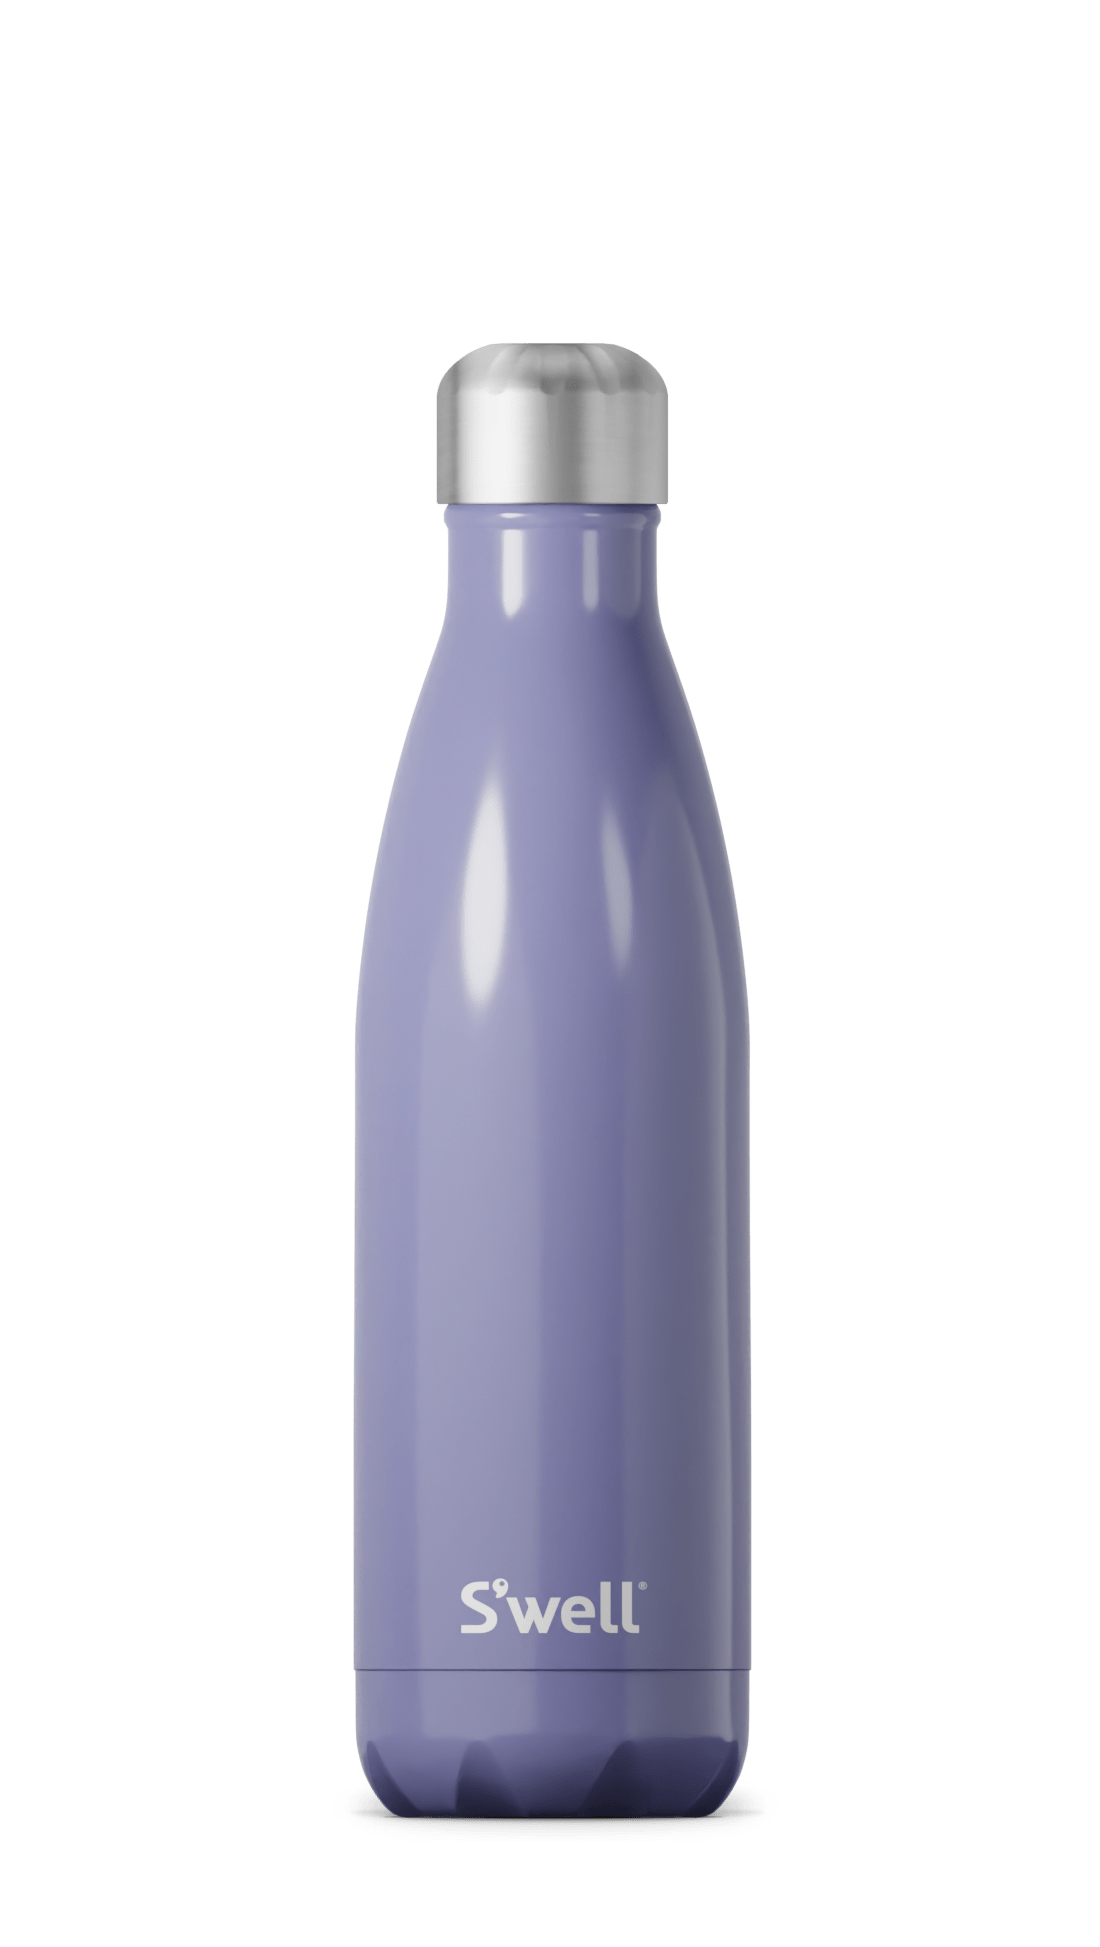 Hillside Lavender Bottle - 17oz